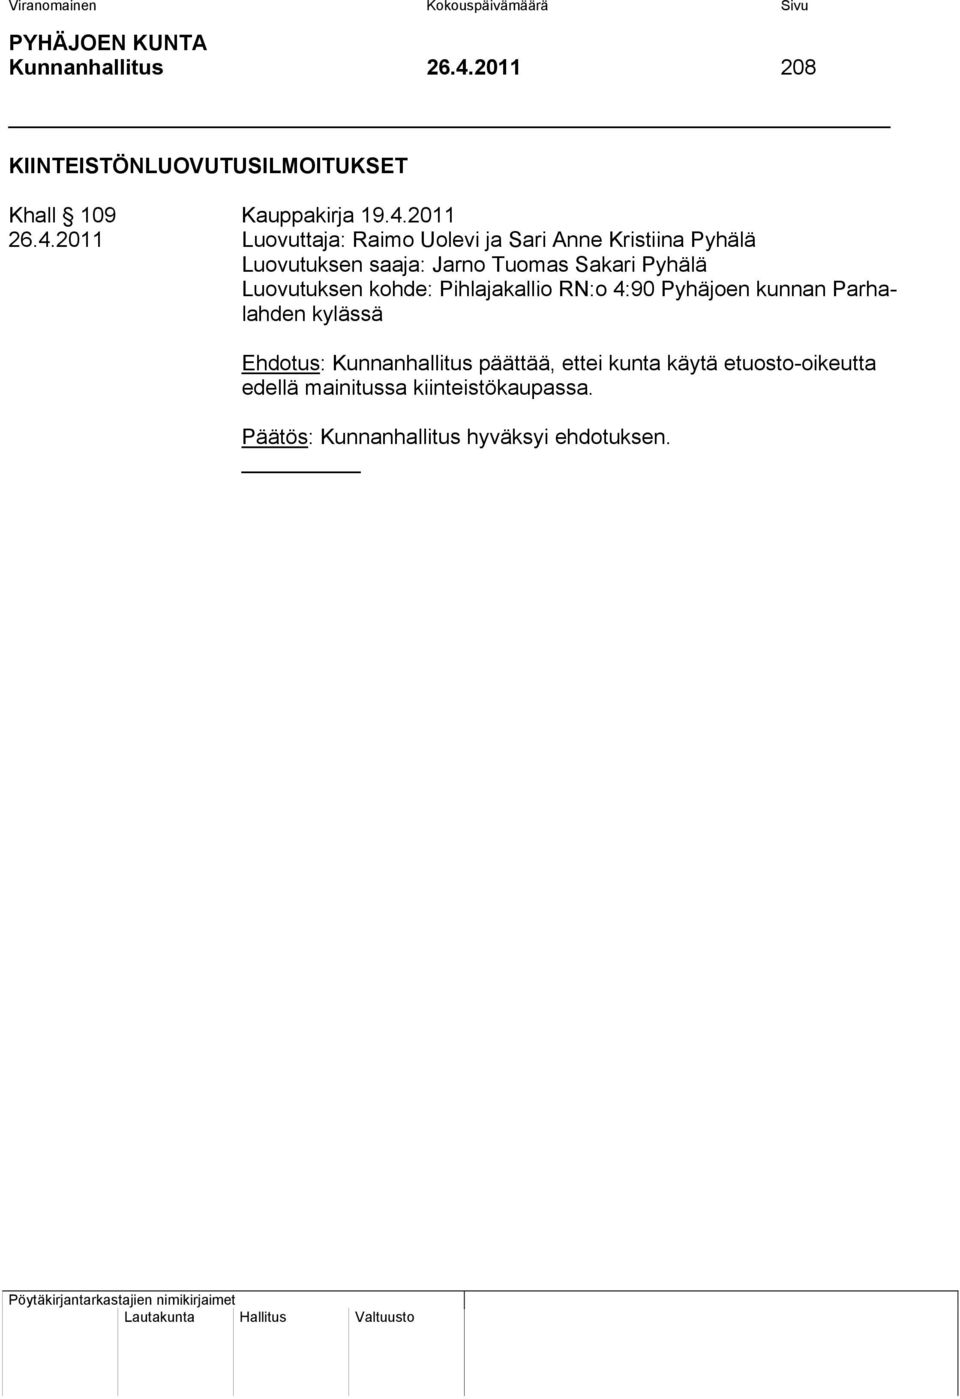 Pihlajakallio RN:o 4:90 Pyhäjoen kunnan Parhalahden kylässä Ehdotus: Kunnanhallitus päättää, ettei kunta käytä etuosto-oikeutta edellä